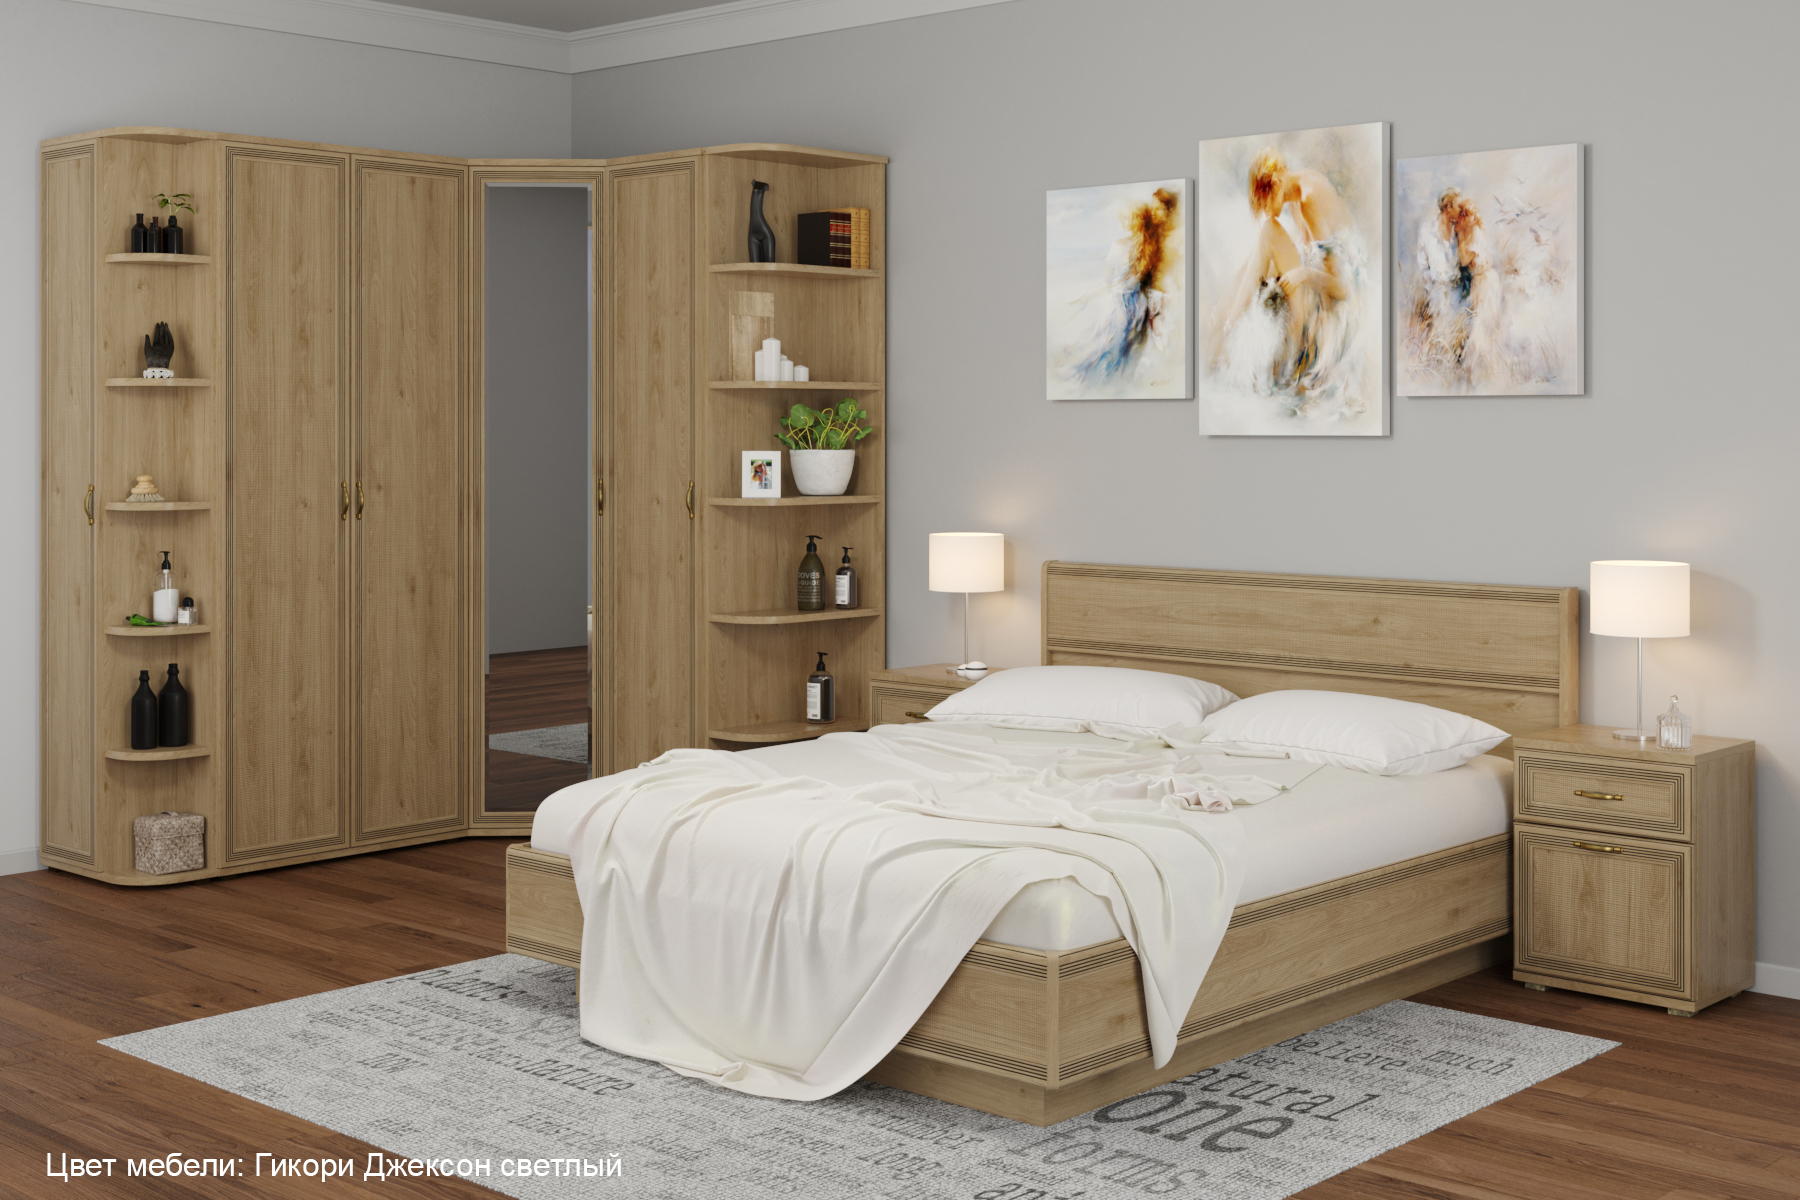 Комплект мебели для спальни "Карина-8"